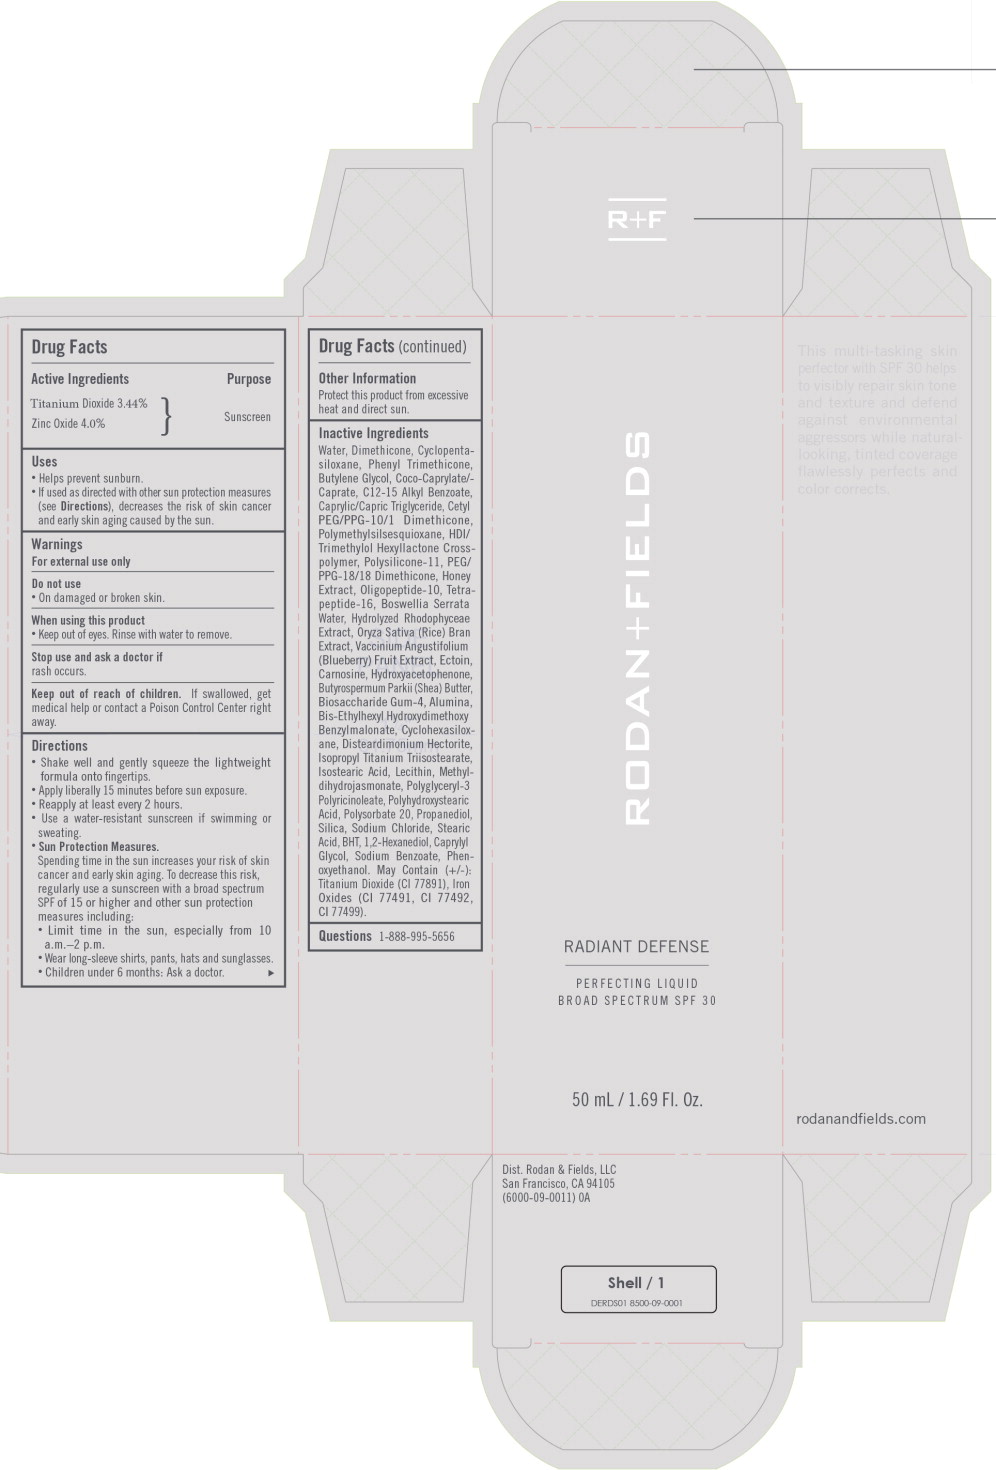 Principal Display Panel – 50 mL Shell Box Label
